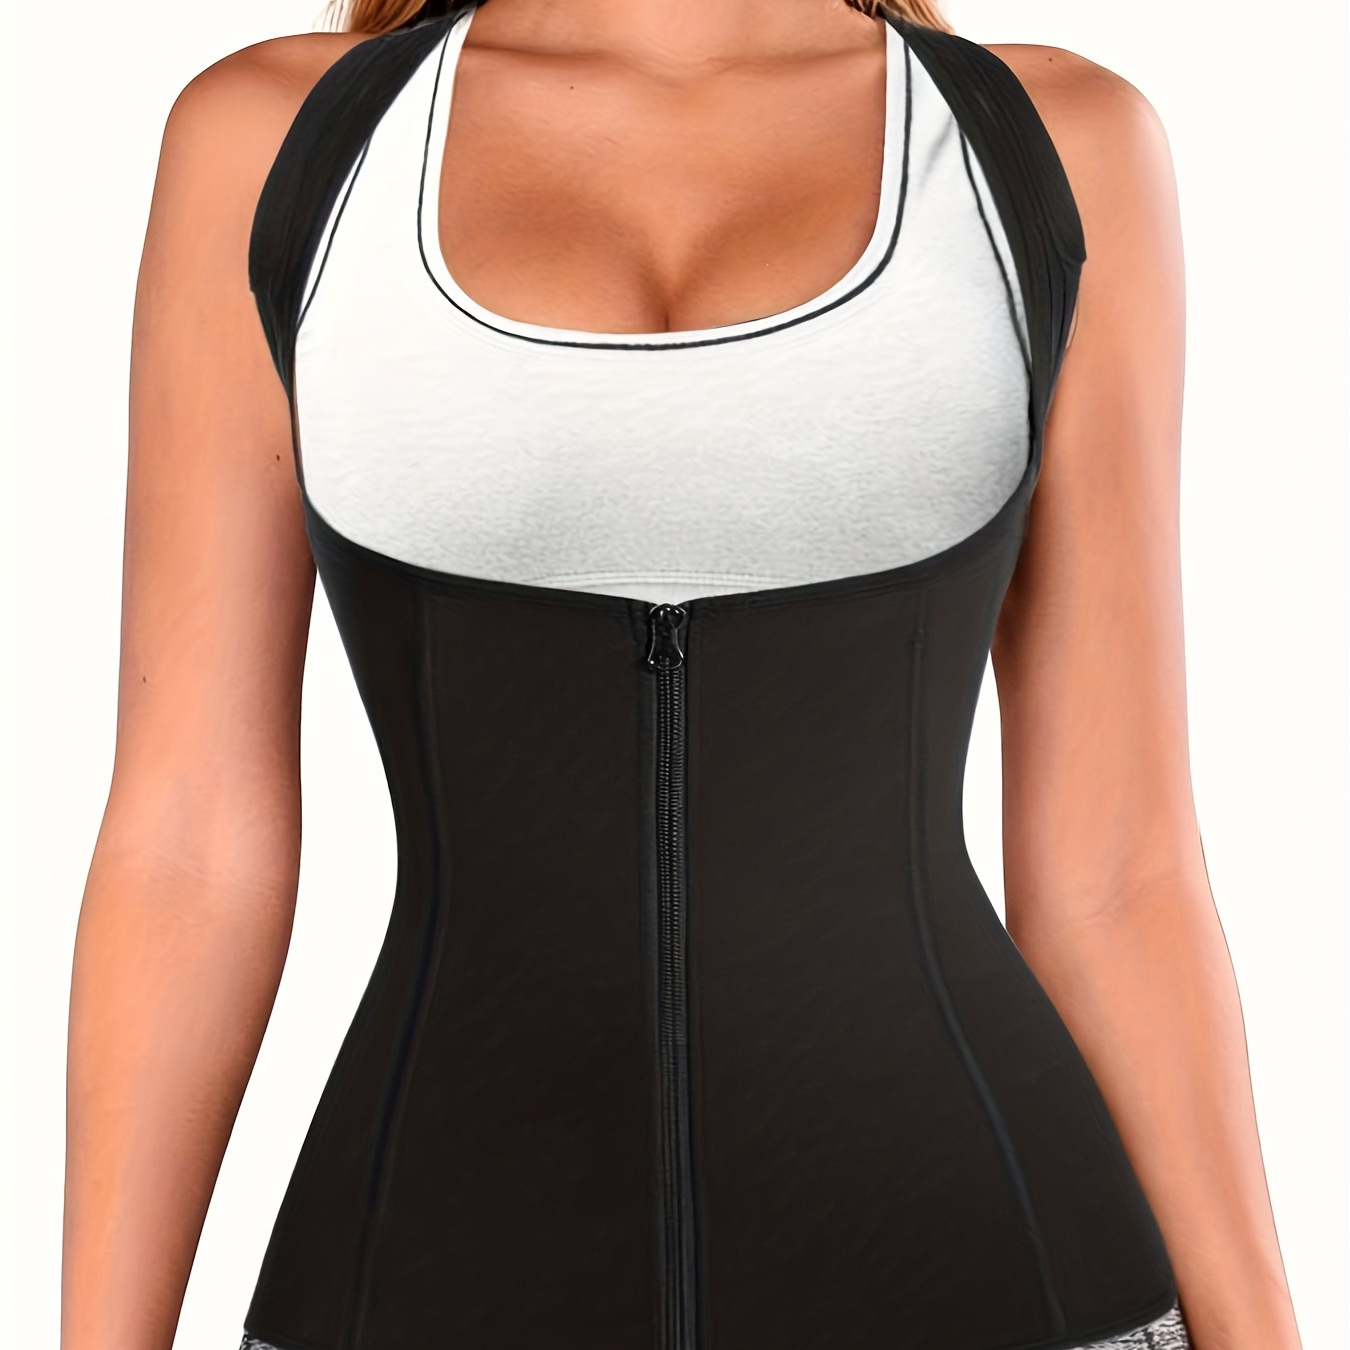 Women Back Braces Posture Corrector Waist Trainer Vest Tummy Control Body  Shaper for Spinal Neck Shoulder